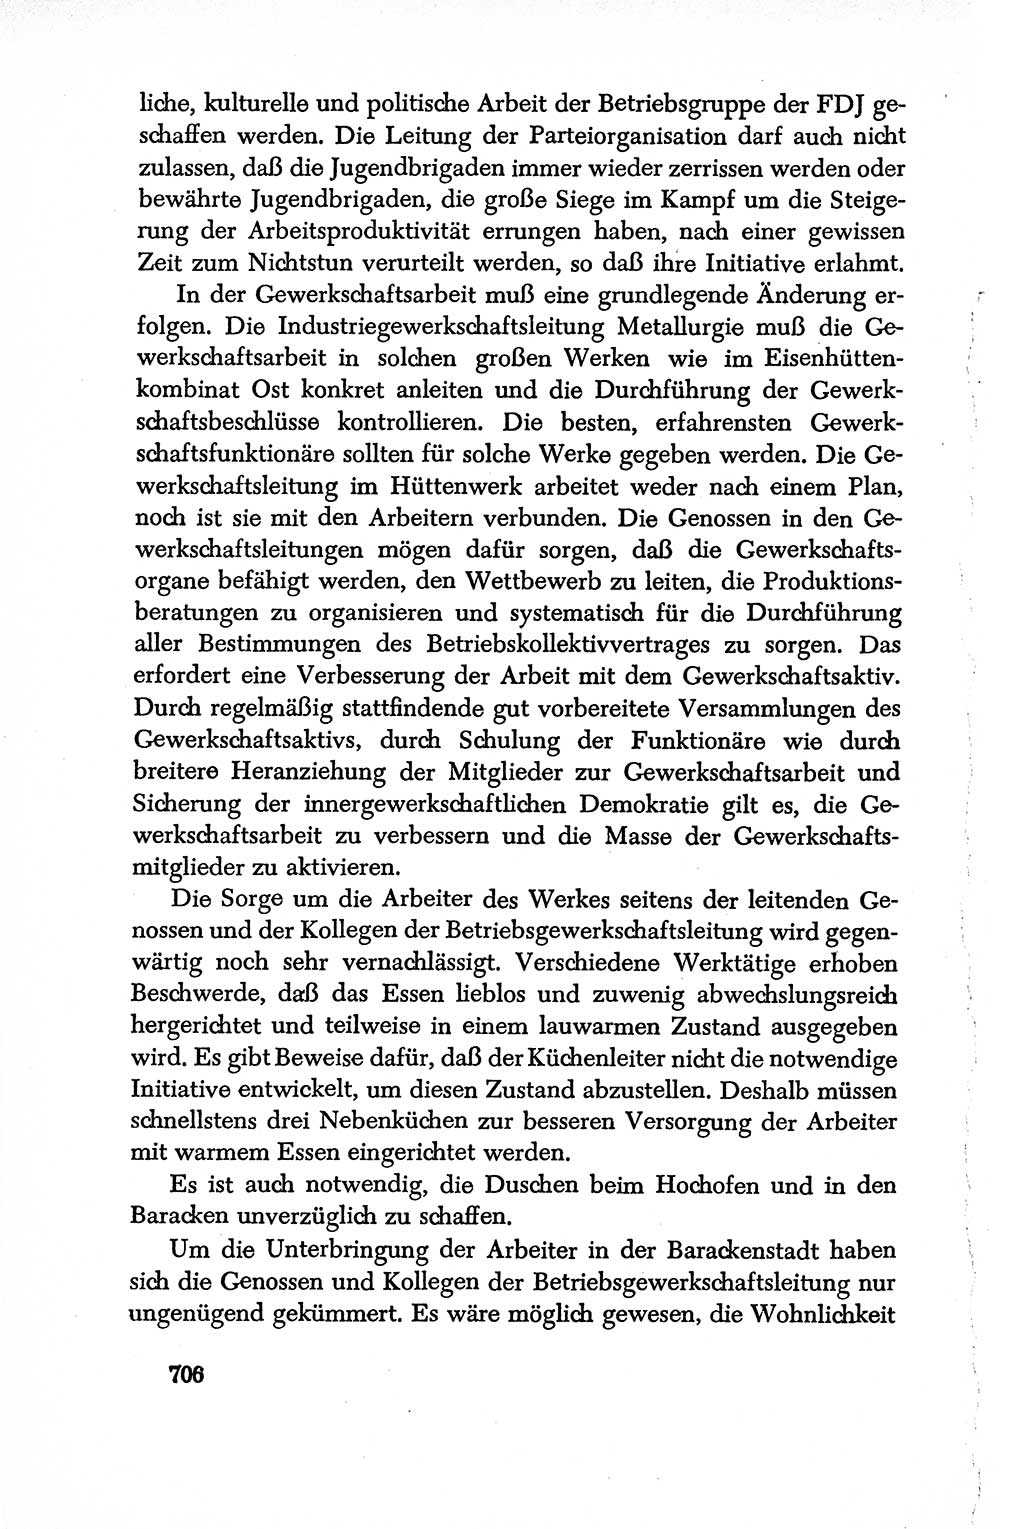 Dokumente der Sozialistischen Einheitspartei Deutschlands (SED) [Deutsche Demokratische Republik (DDR)] 1950-1952, Seite 706 (Dok. SED DDR 1950-1952, S. 706)